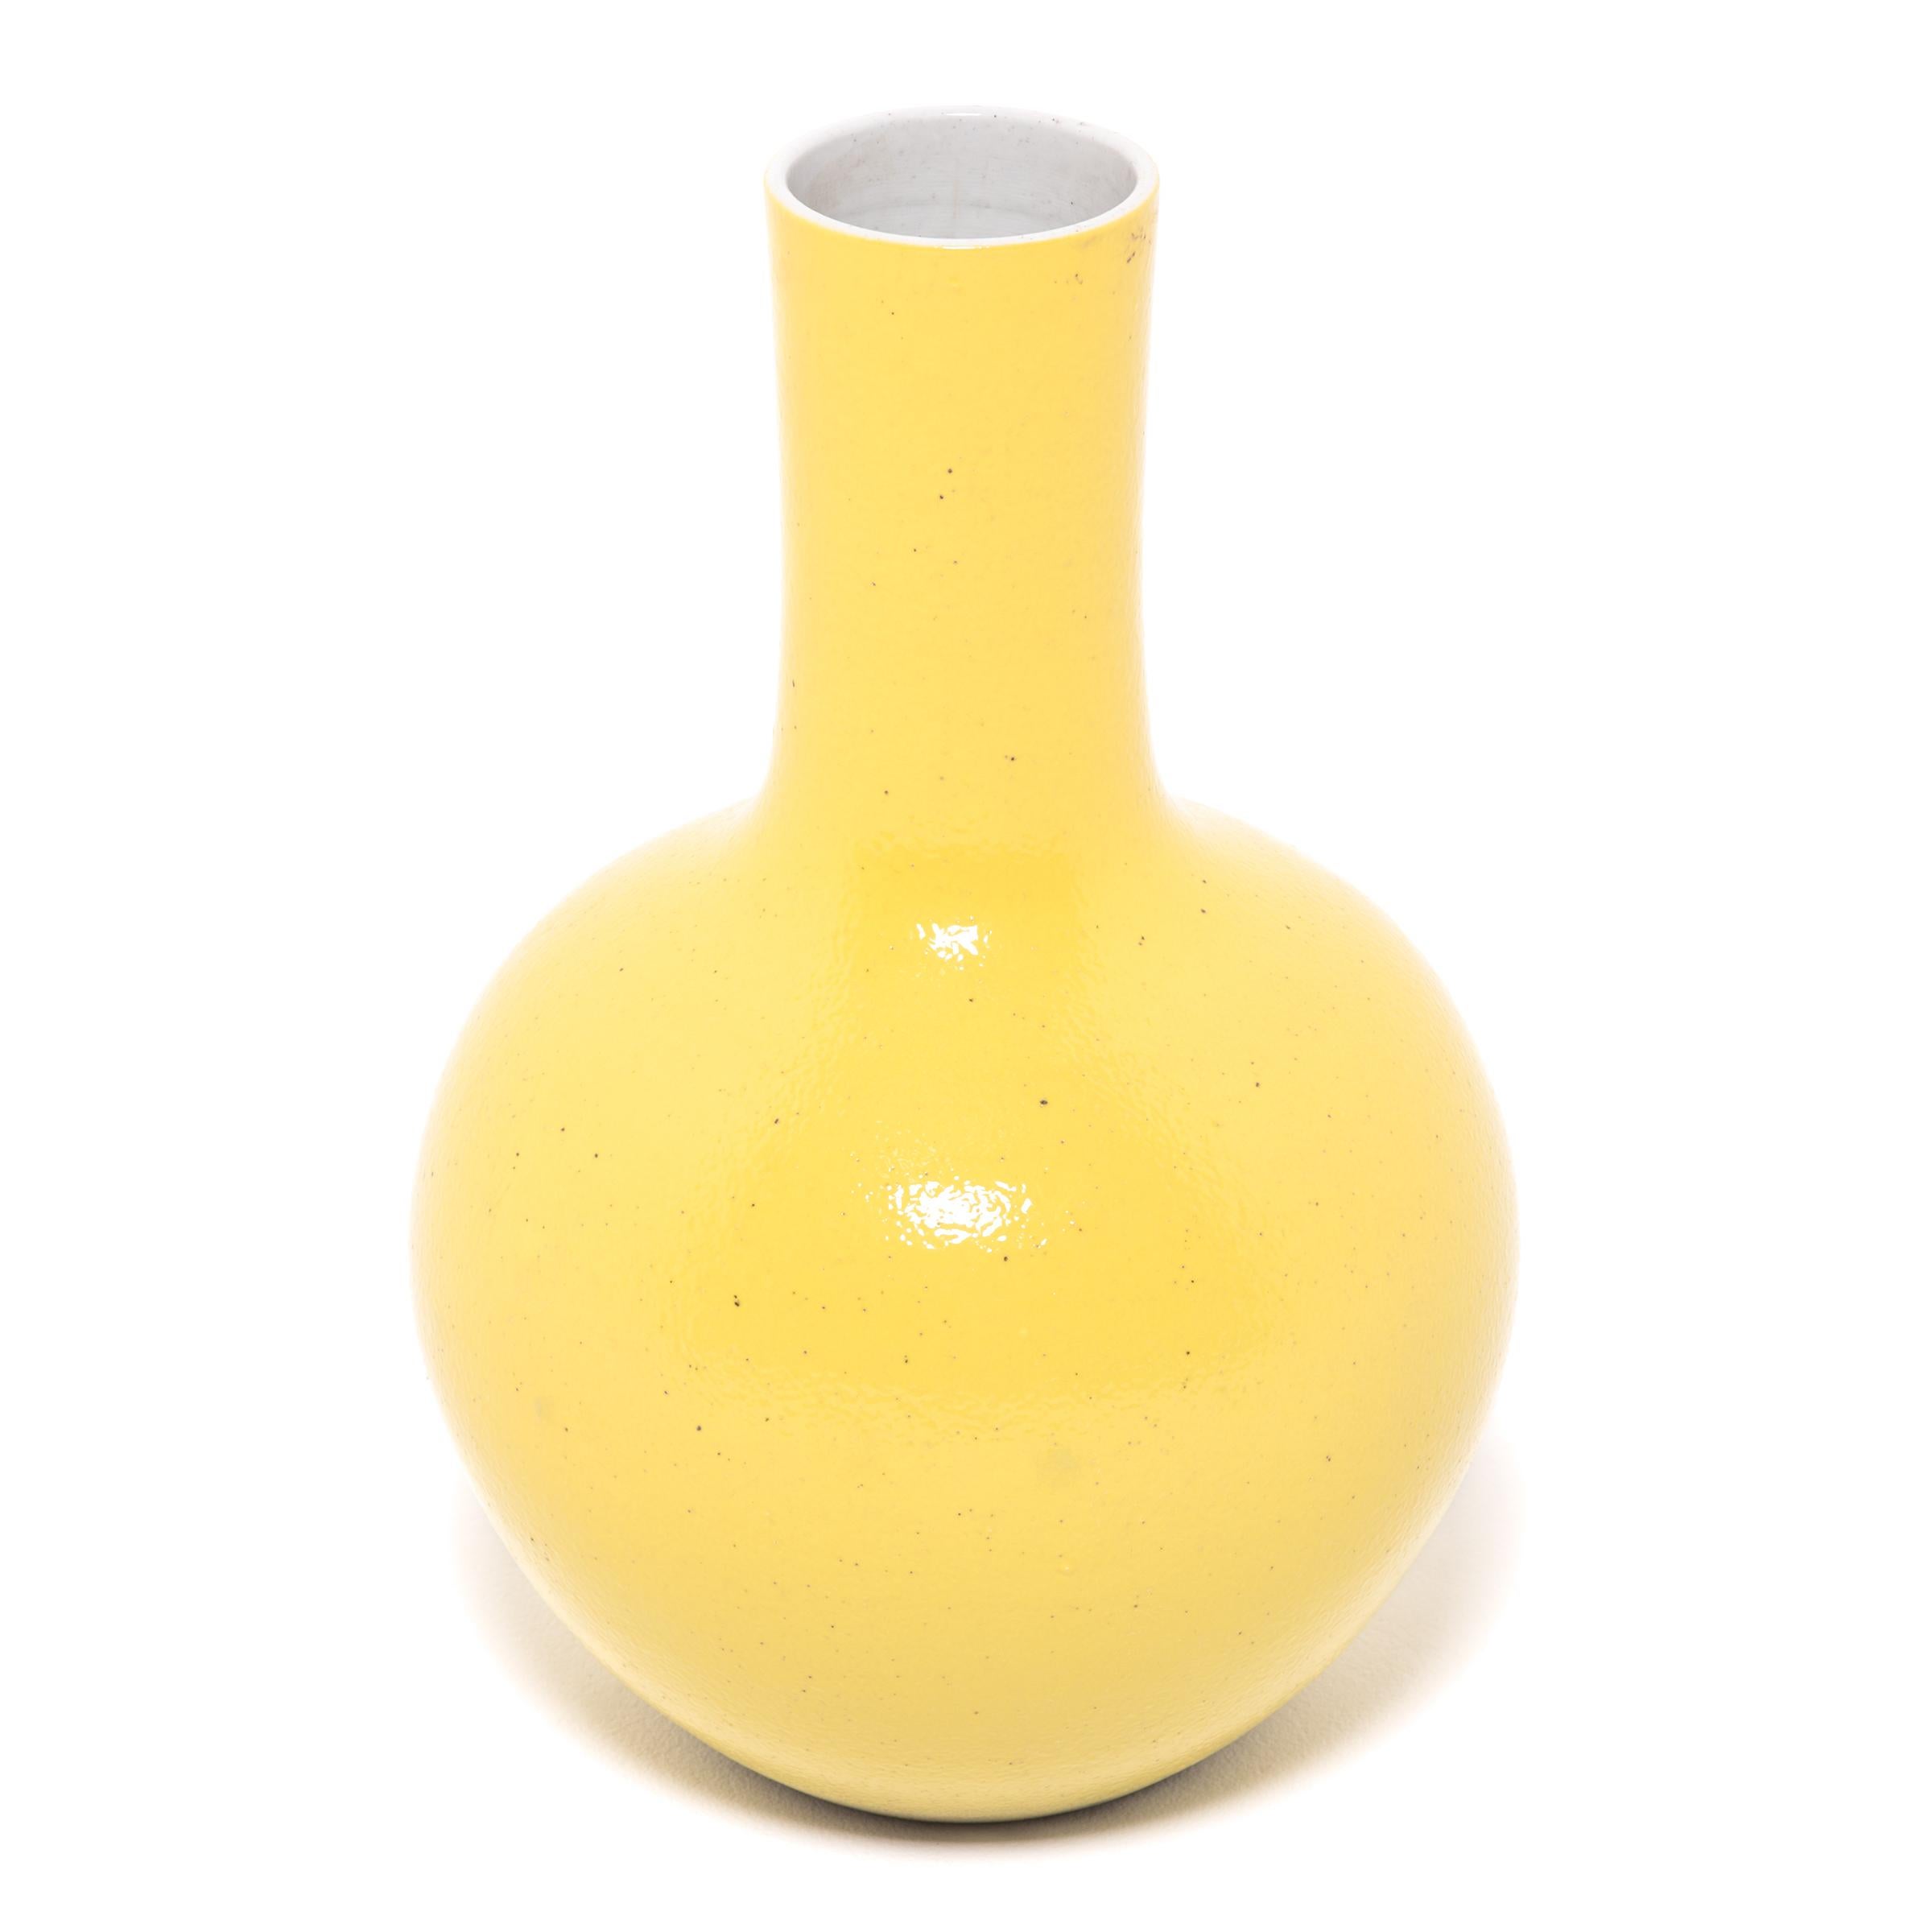 S'inspirant d'une longue tradition chinoise de la céramique, ce vase à long col est recouvert d'une glaçure jaune citron. Avec son corps arrondi et globulaire et son col cylindrique, ce grand vase réinterprète la forme traditionnelle du col de